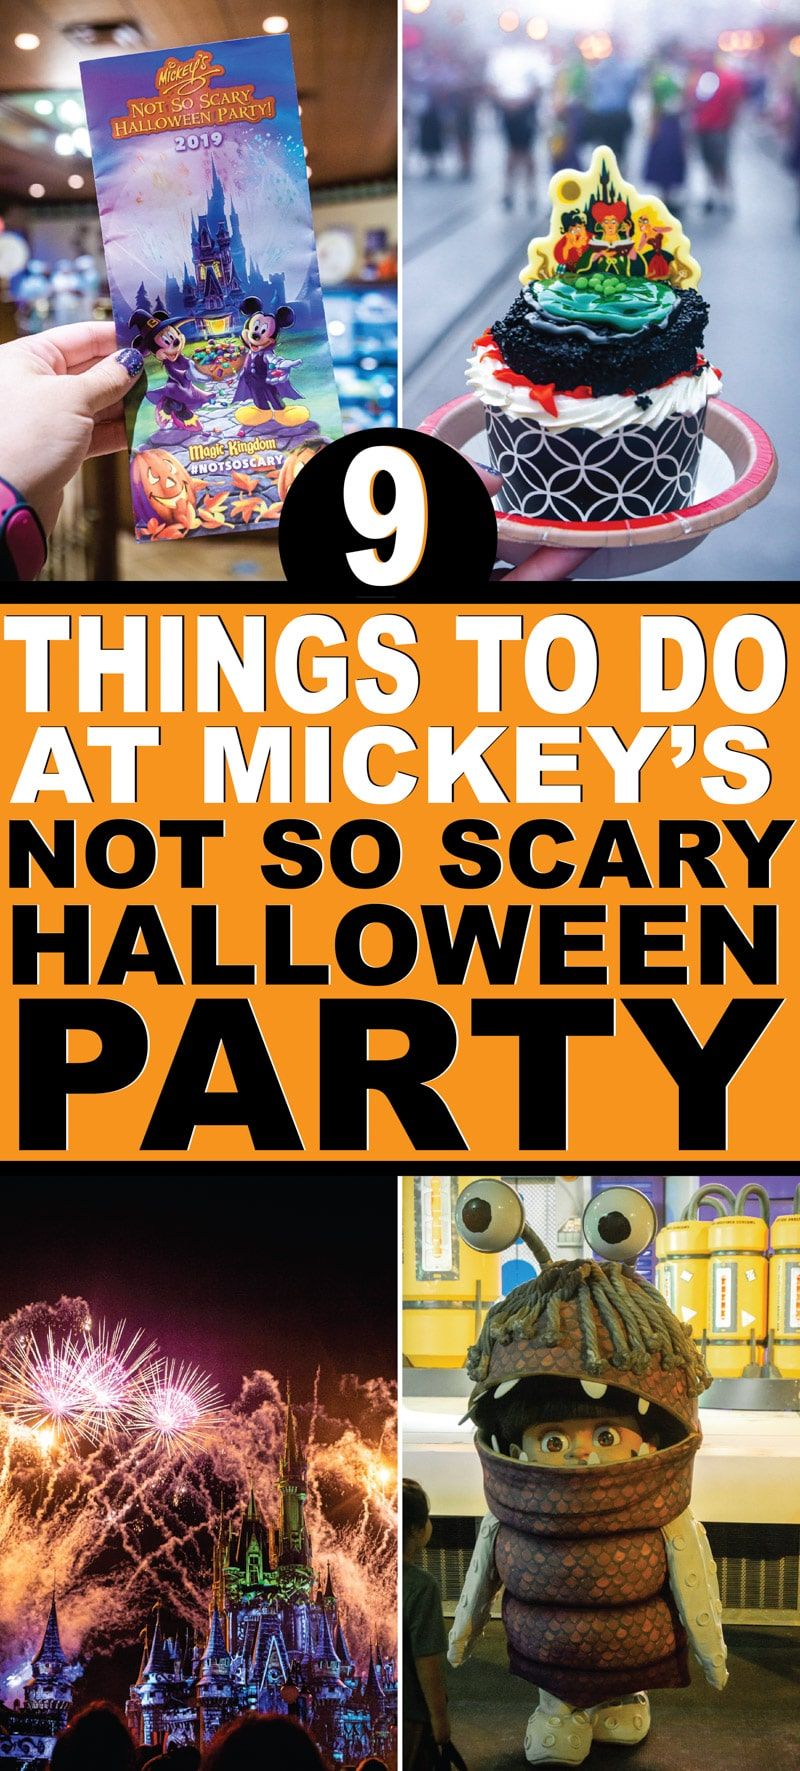 Cel mai bun ghid pentru petrecerea de Halloween a lui Mickey, atât de înfricoșătoare din 2019, la Disney World! Totul, de la regula privind costumele, care sunt alimentele și deserturile cele mai bune, cu cine poți face poze și, bineînțeles, niște costume și cămăși DIY pe care le poți face pentru petrecere! Și nu uitați toate sfaturile din interior pentru a vedea cele mai multe personaje și a obține cele mai multe bomboane!